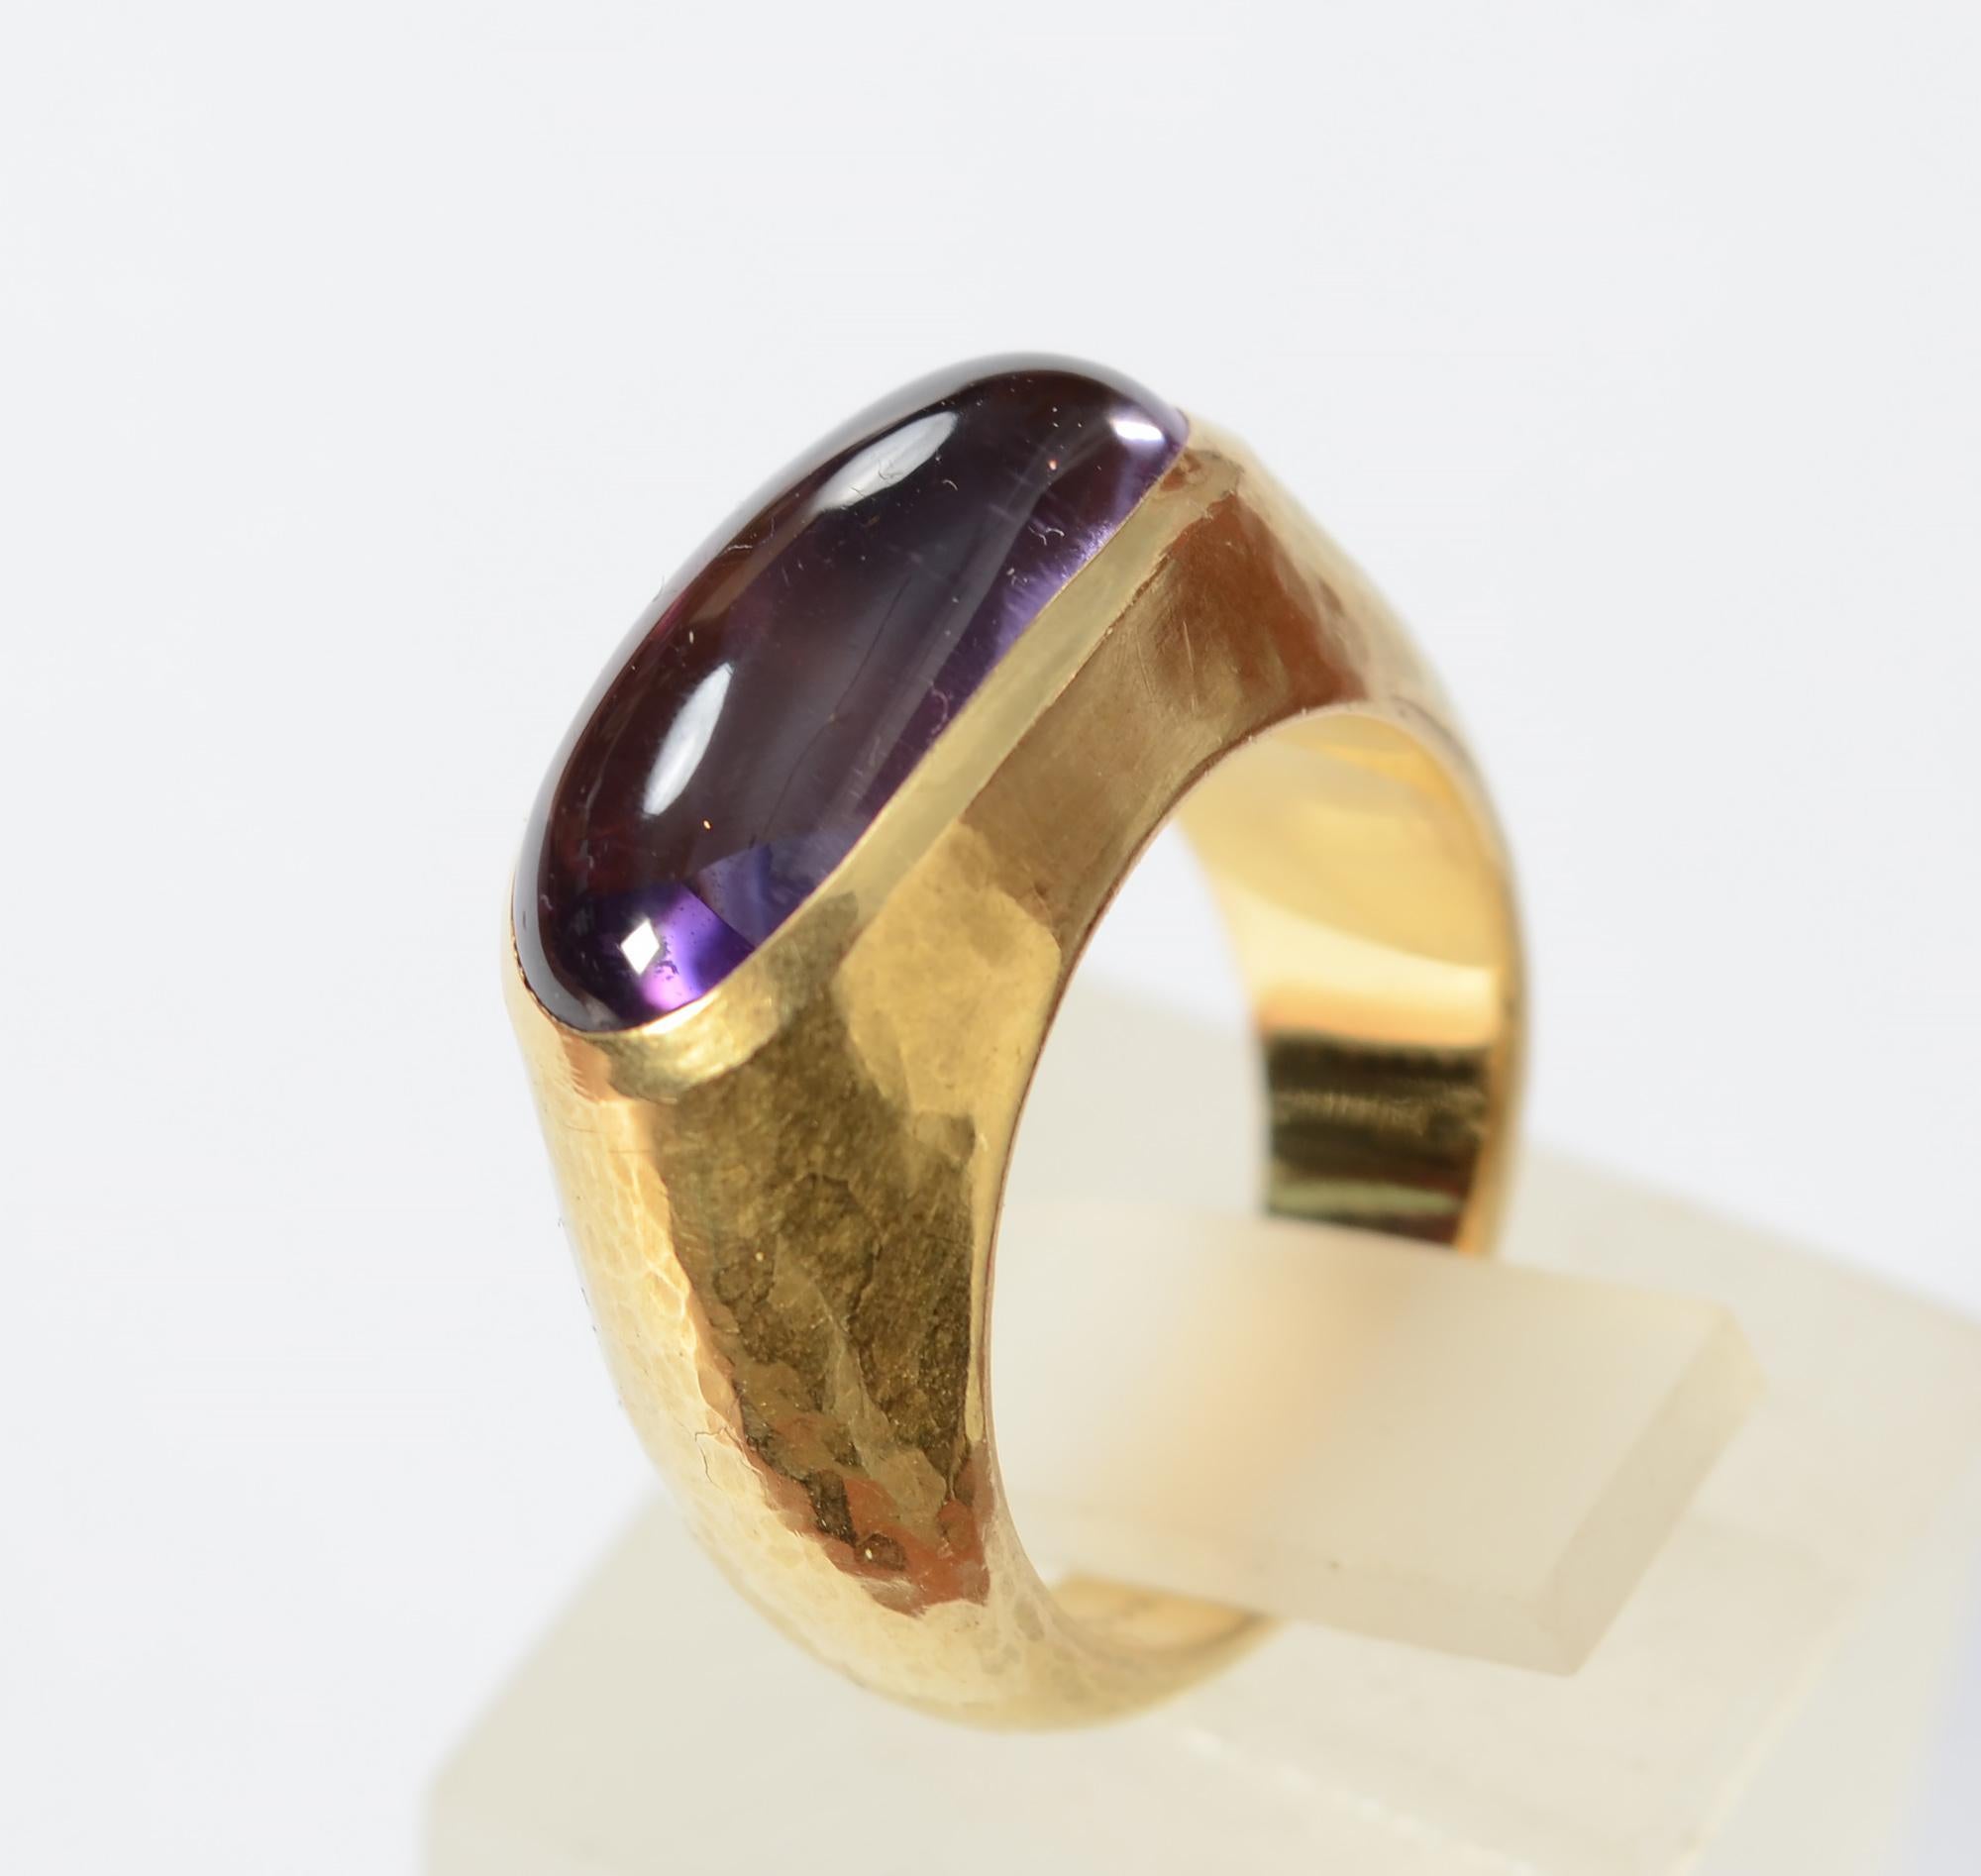 Jolie bague en améthyste du designer londonien Leo De Vroomen. L'or 18 carats est légèrement martelé à la main. L'améthyste mesure 3/4